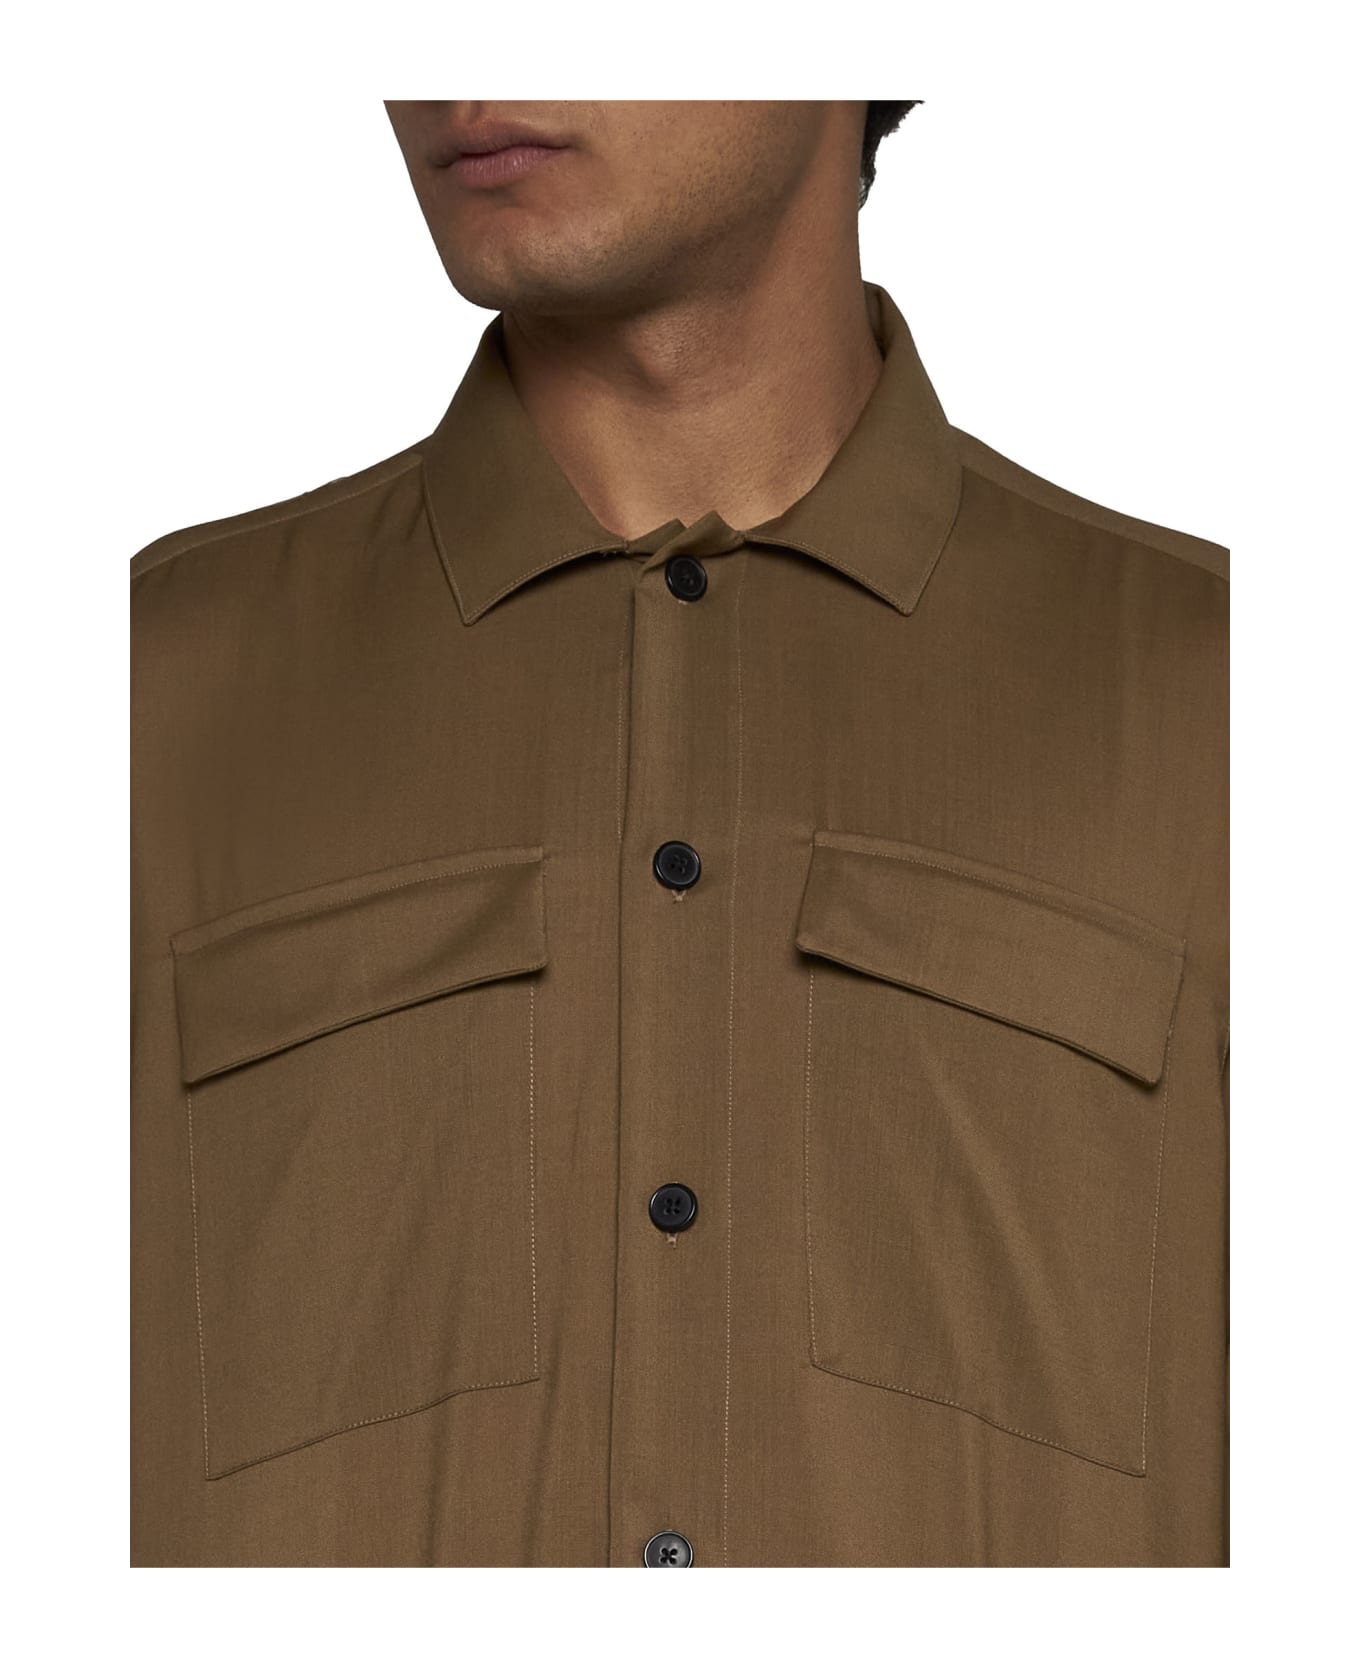 Low Brand Shirt - Safari シャツ